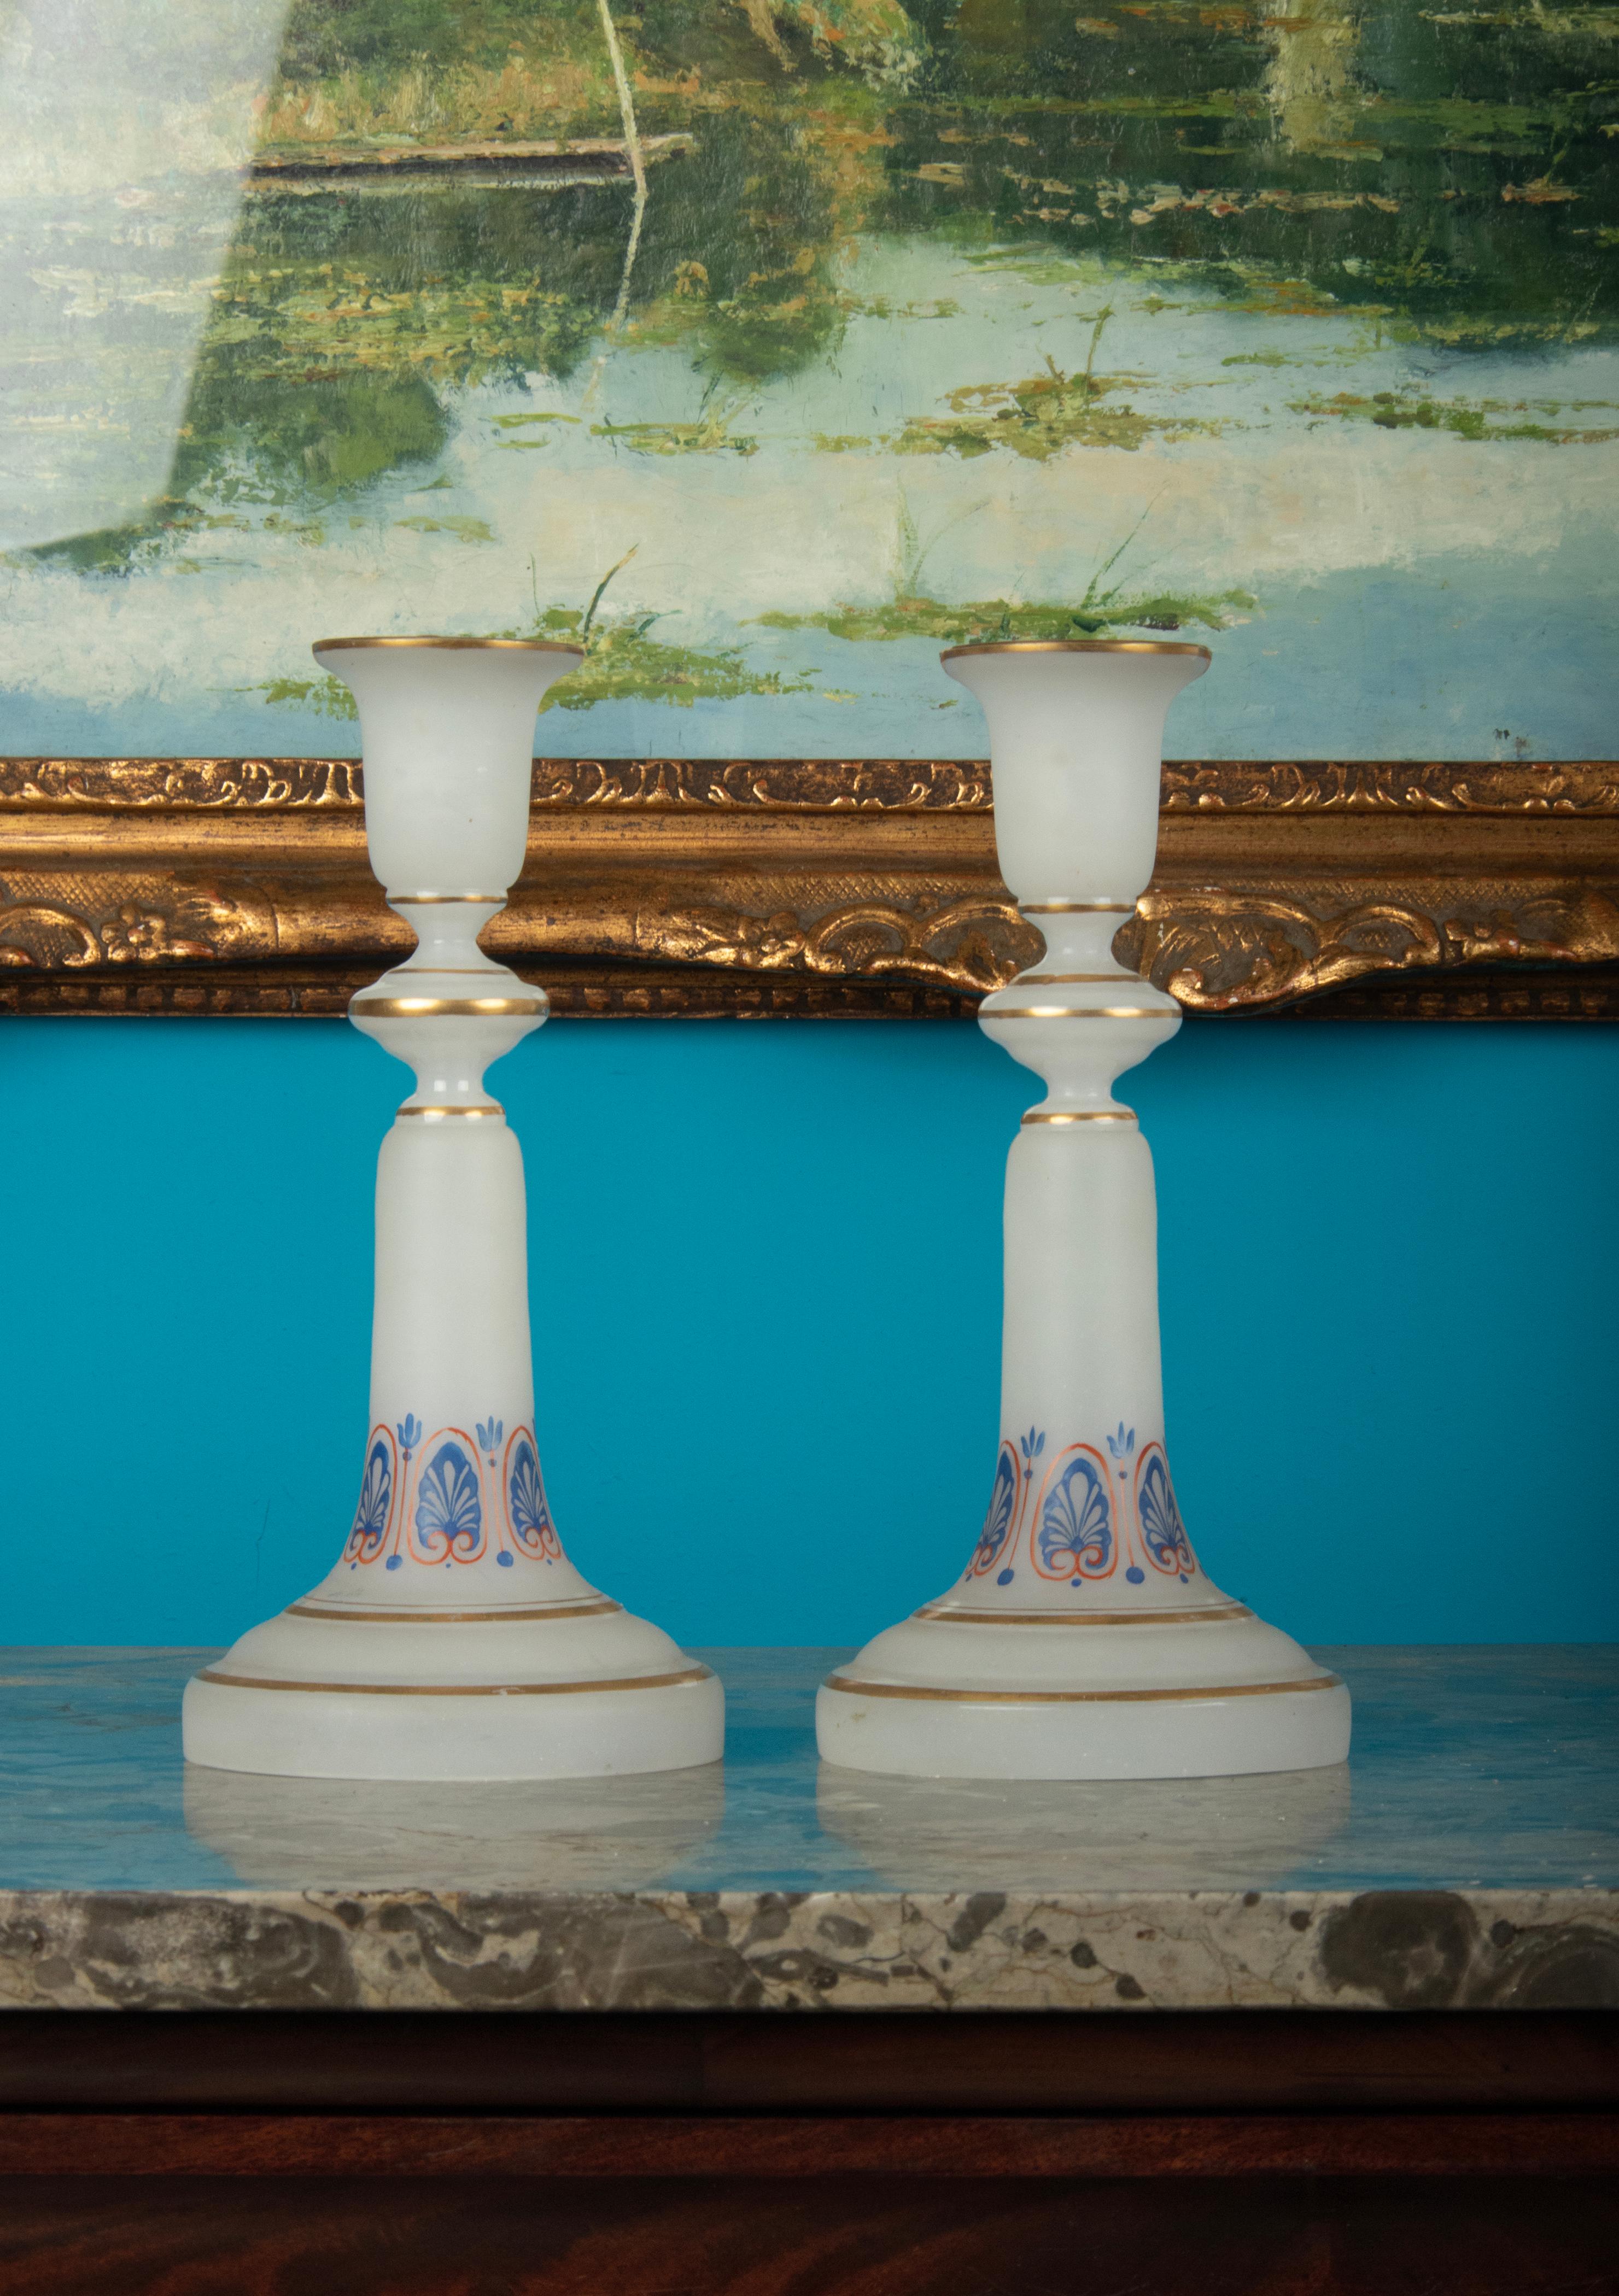 Ein schönes Paar Kerzenständer aus satiniertem, mattiertem Opalglas. Handbemalt mit goldfarbenen Rändern und gotischen Motiven. Die Kerzenständer sind in gutem Zustand, die Verzierungen sind noch schön intakt.